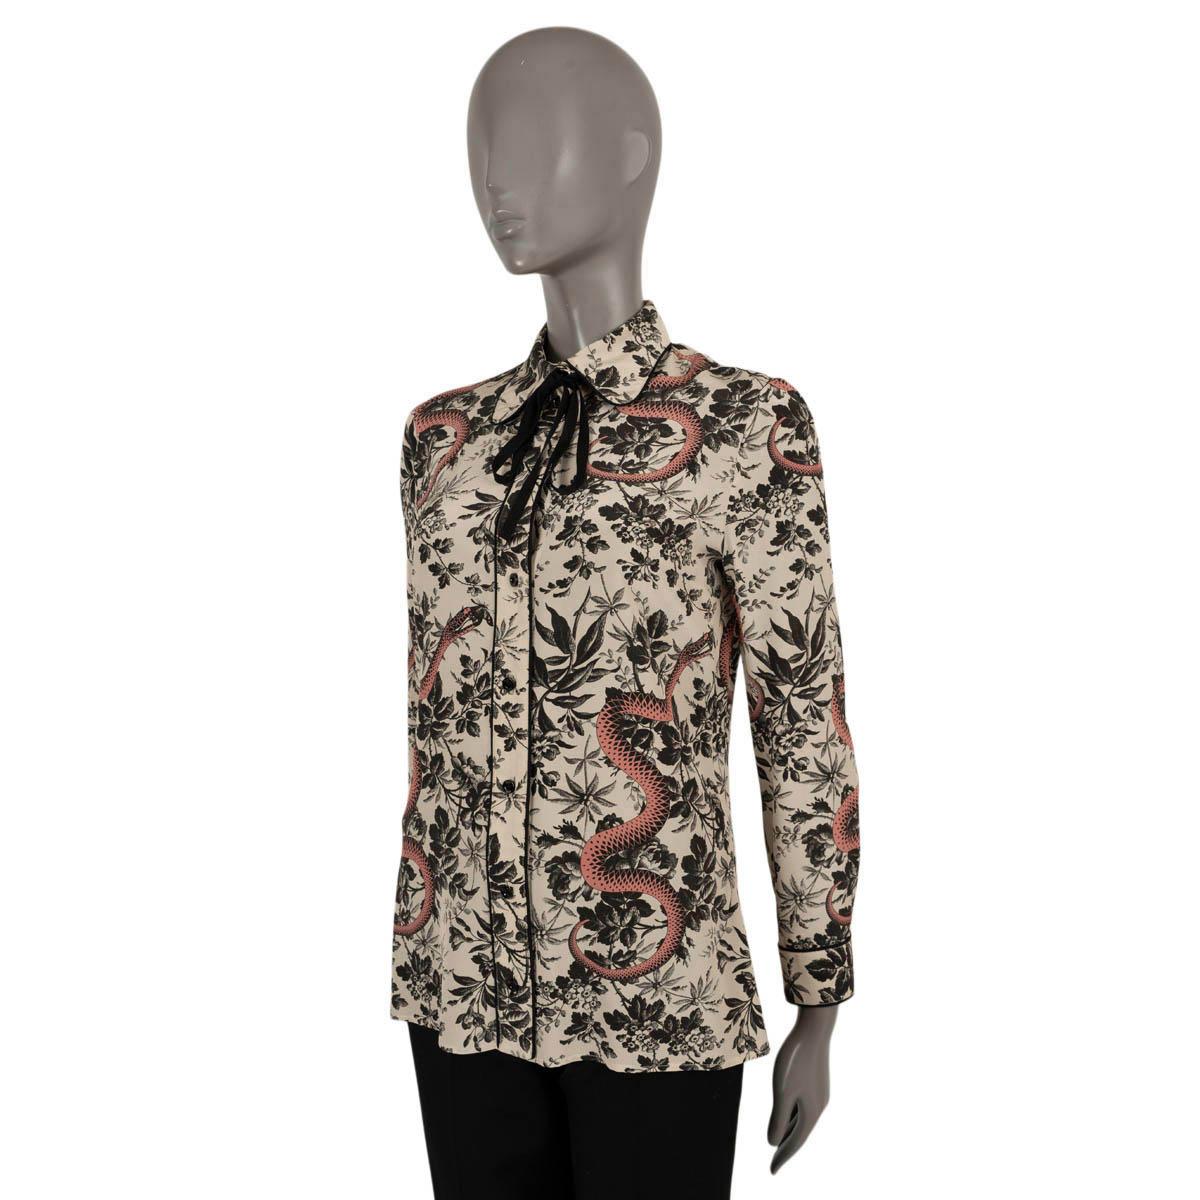 100% authentische Gucci Herbarium Snake Print Bluse aus blassrosa Kreppseide (100% - bitte beachten Sie, dass das Inhaltsetikett fehlt). Mit schwarzem Blumendruck, rosa Schlangen und schwarzen Paspeln. Wird mit Knöpfen auf der Vorderseite